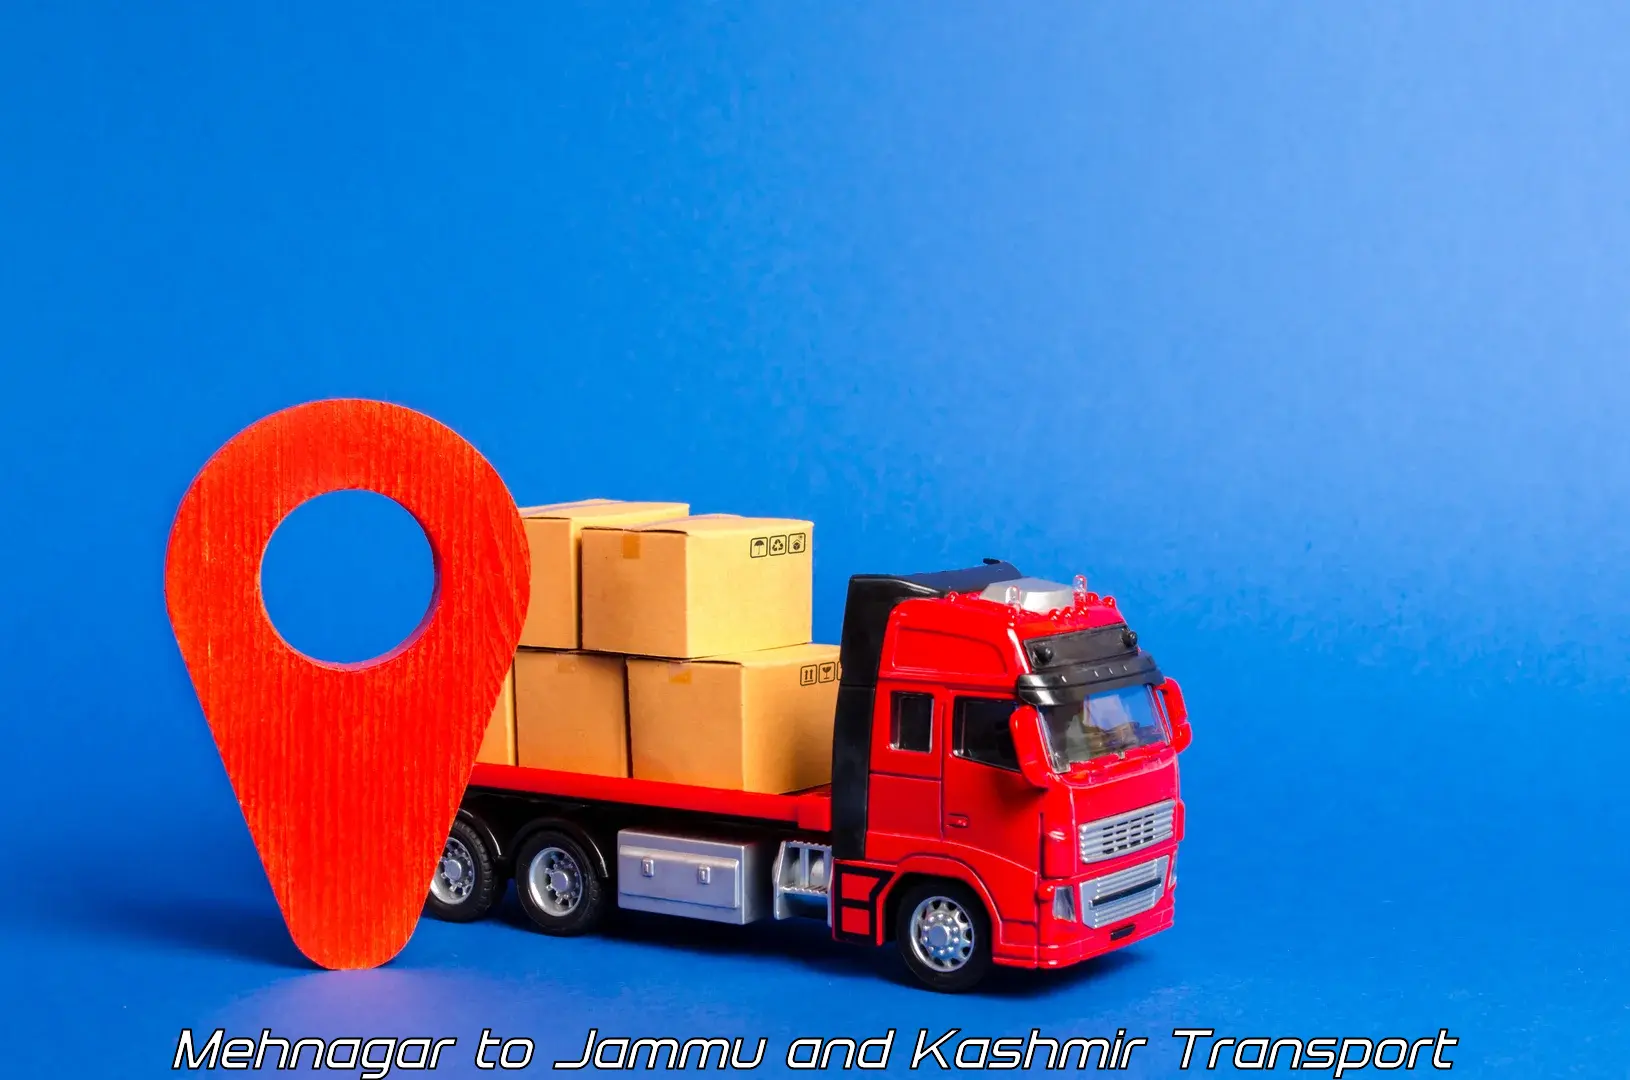 Logistics transportation services in Mehnagar to Katra